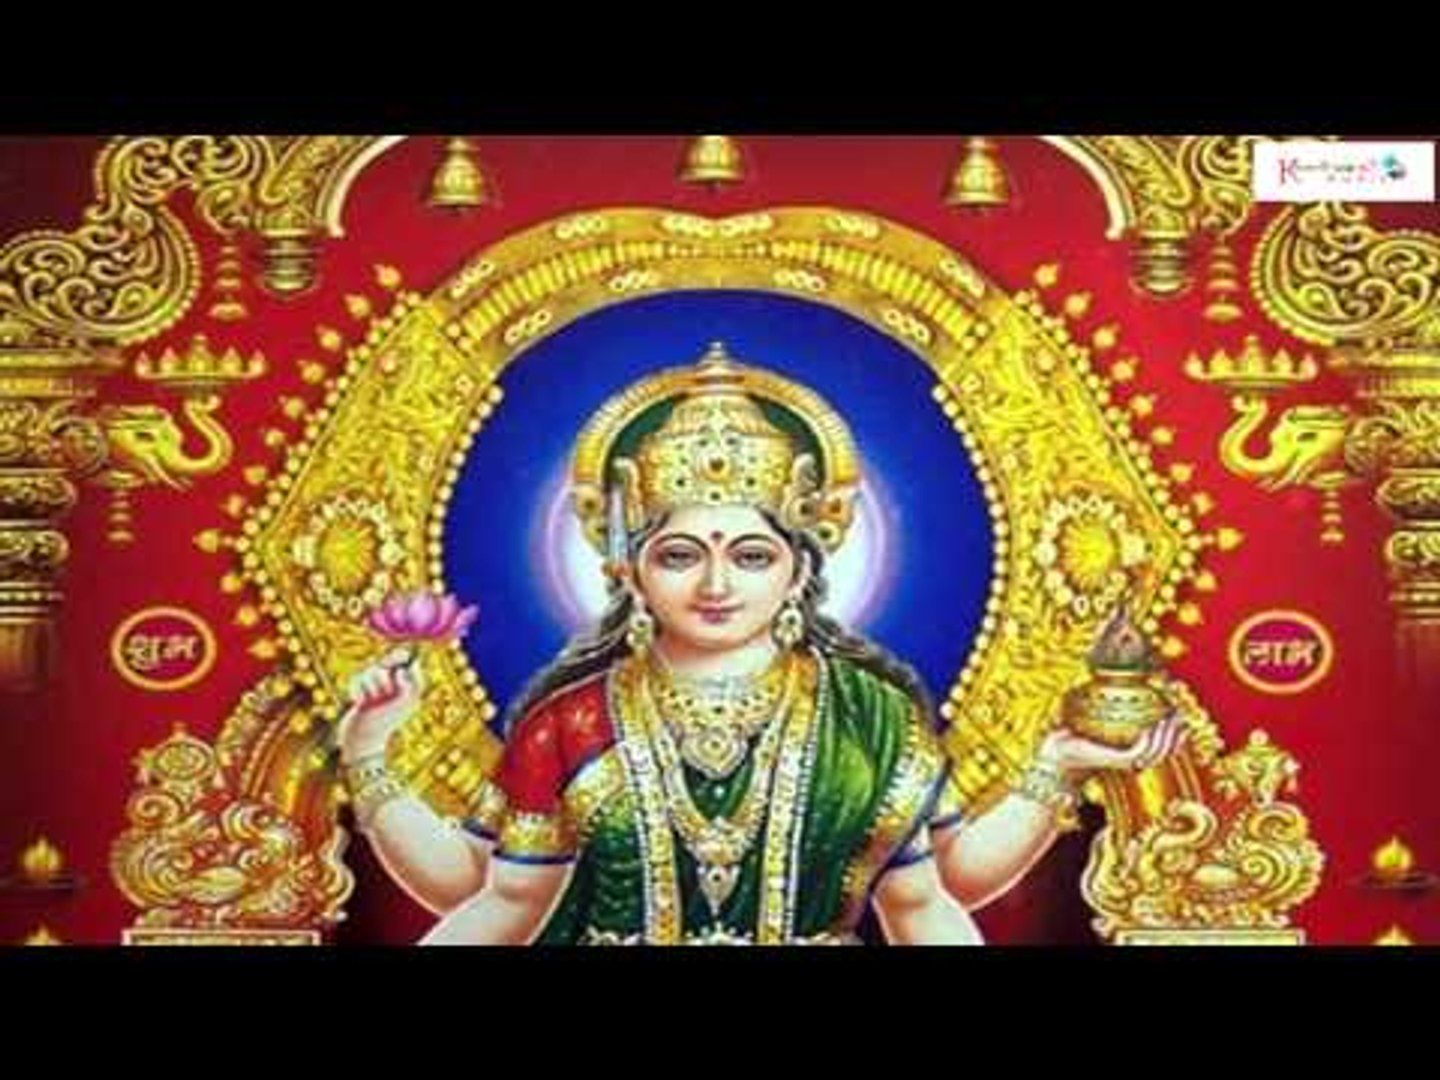 Goddess Sri Laxmi Devi Top Devotional Songs.. N.Surya Prakash